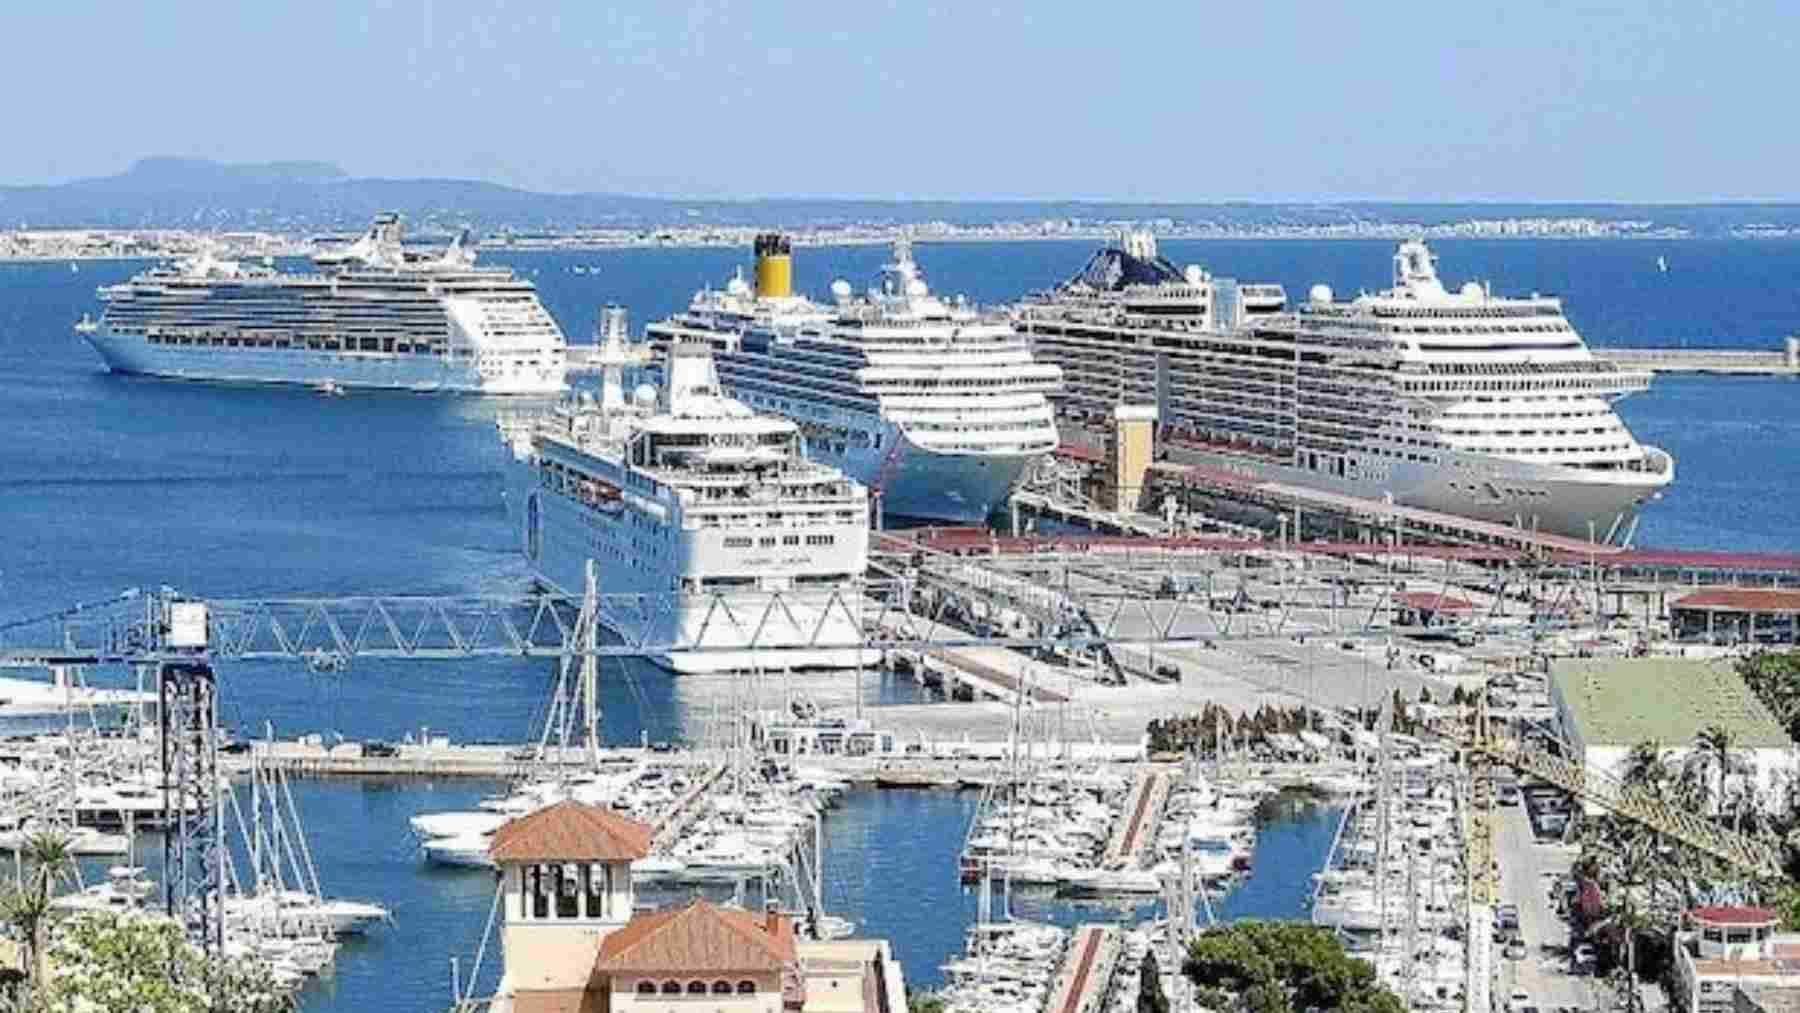 Cruceros atracados en el puerto de Palma.